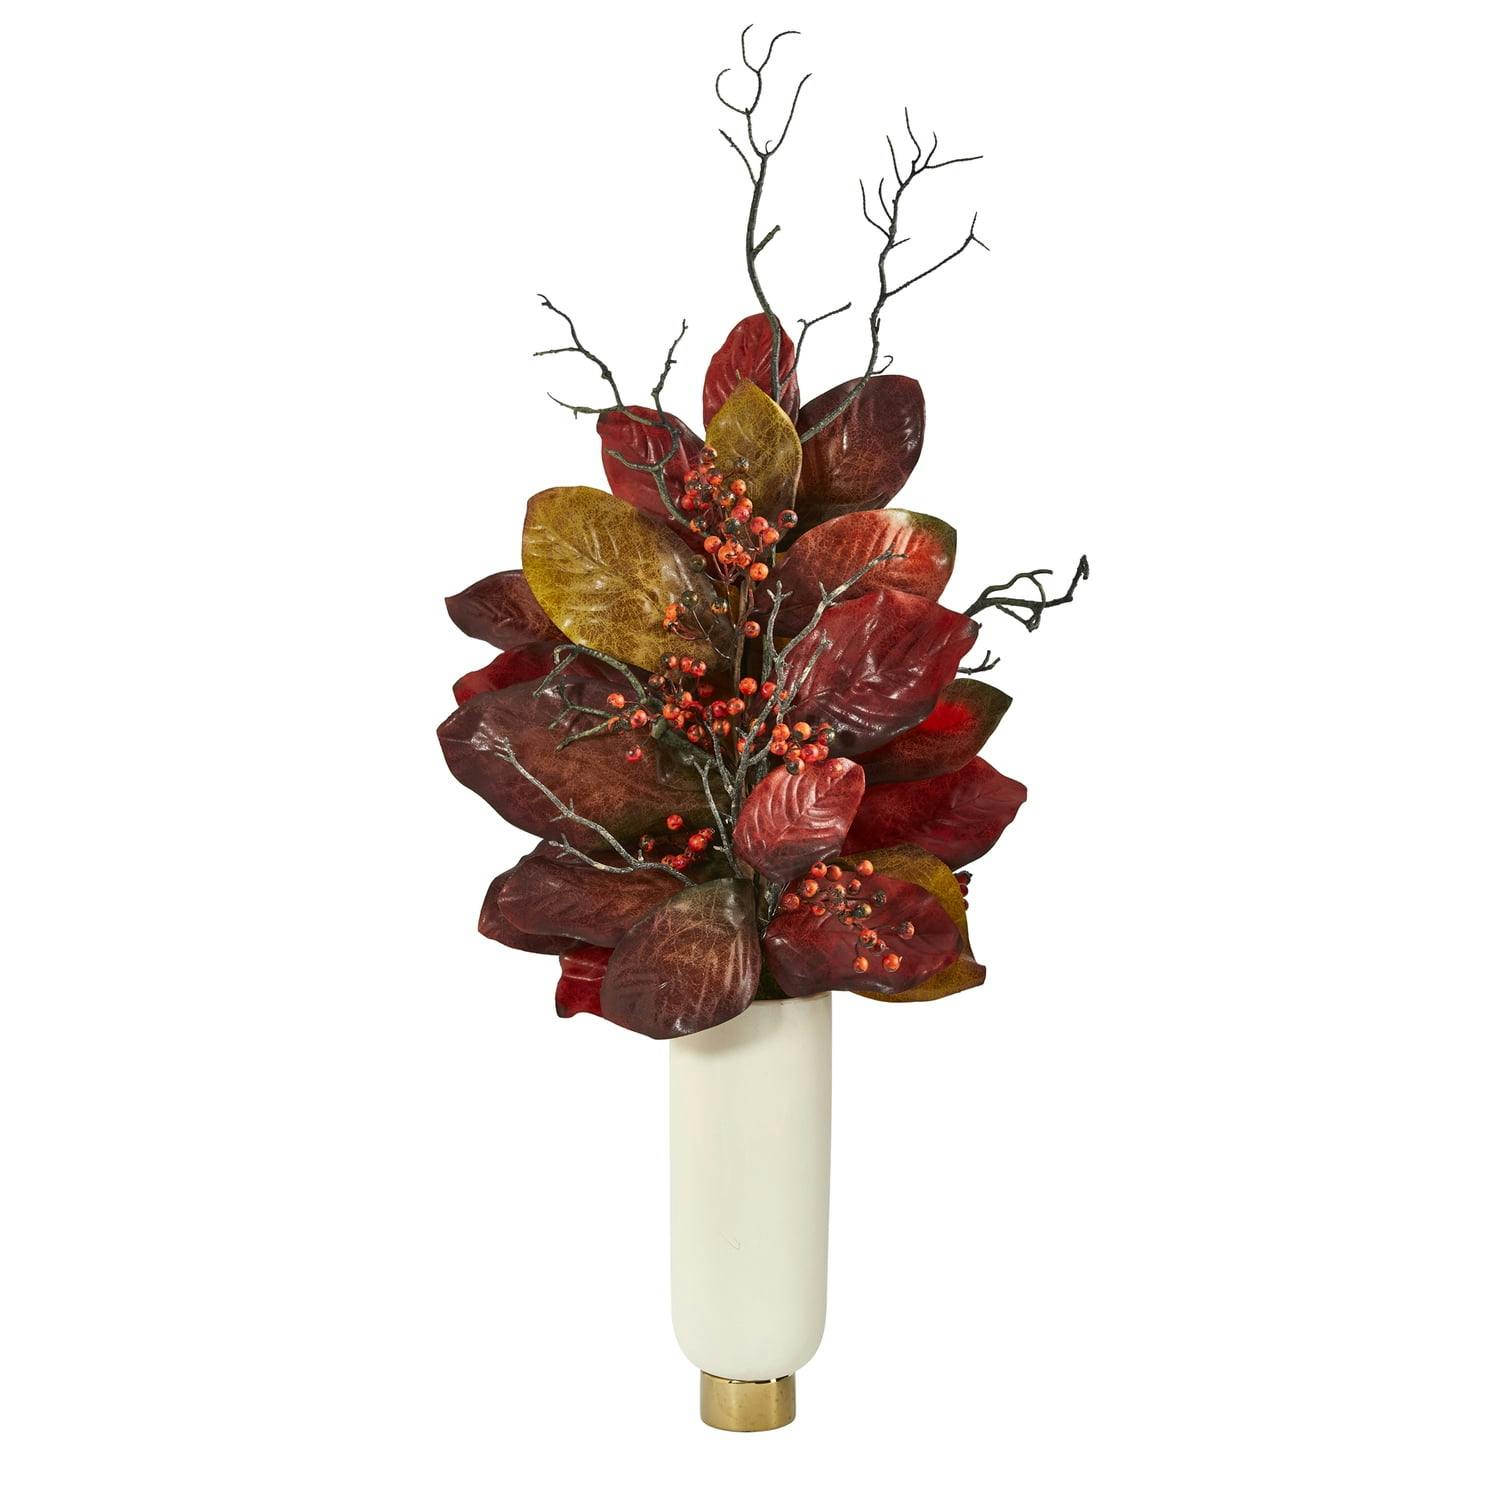 Autumn Elegance 42" Silk Magnolia & Berries in Cream & Gold Planter